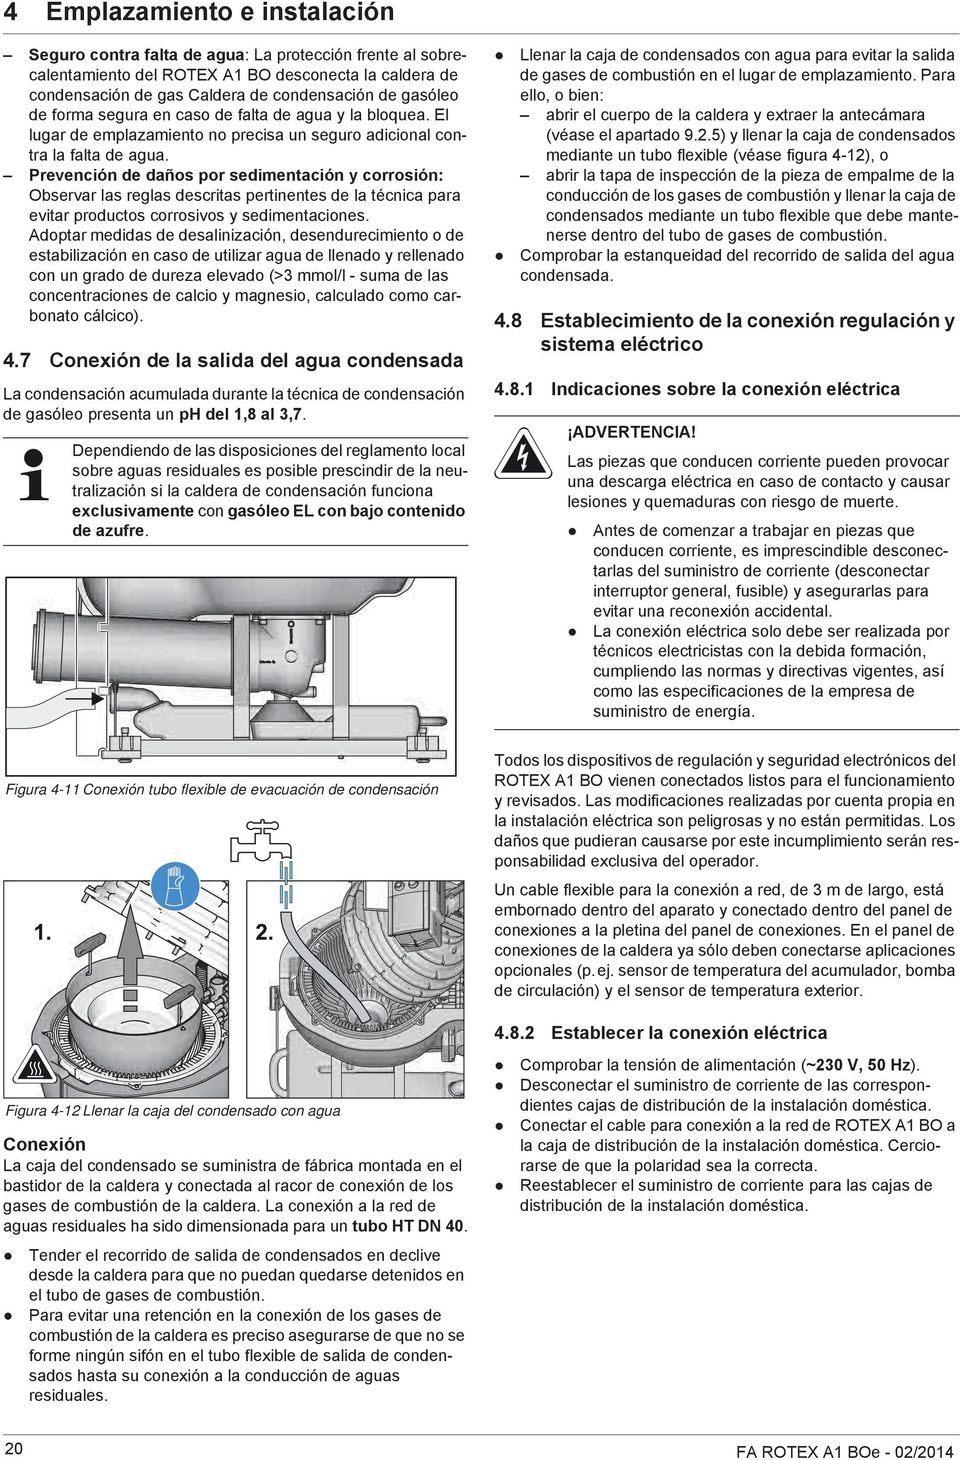 Prevención de daños por sedimentación y corrosión: Observar las reglas descritas pertinentes de la técnica para evitar productos corrosivos y sedimentaciones.